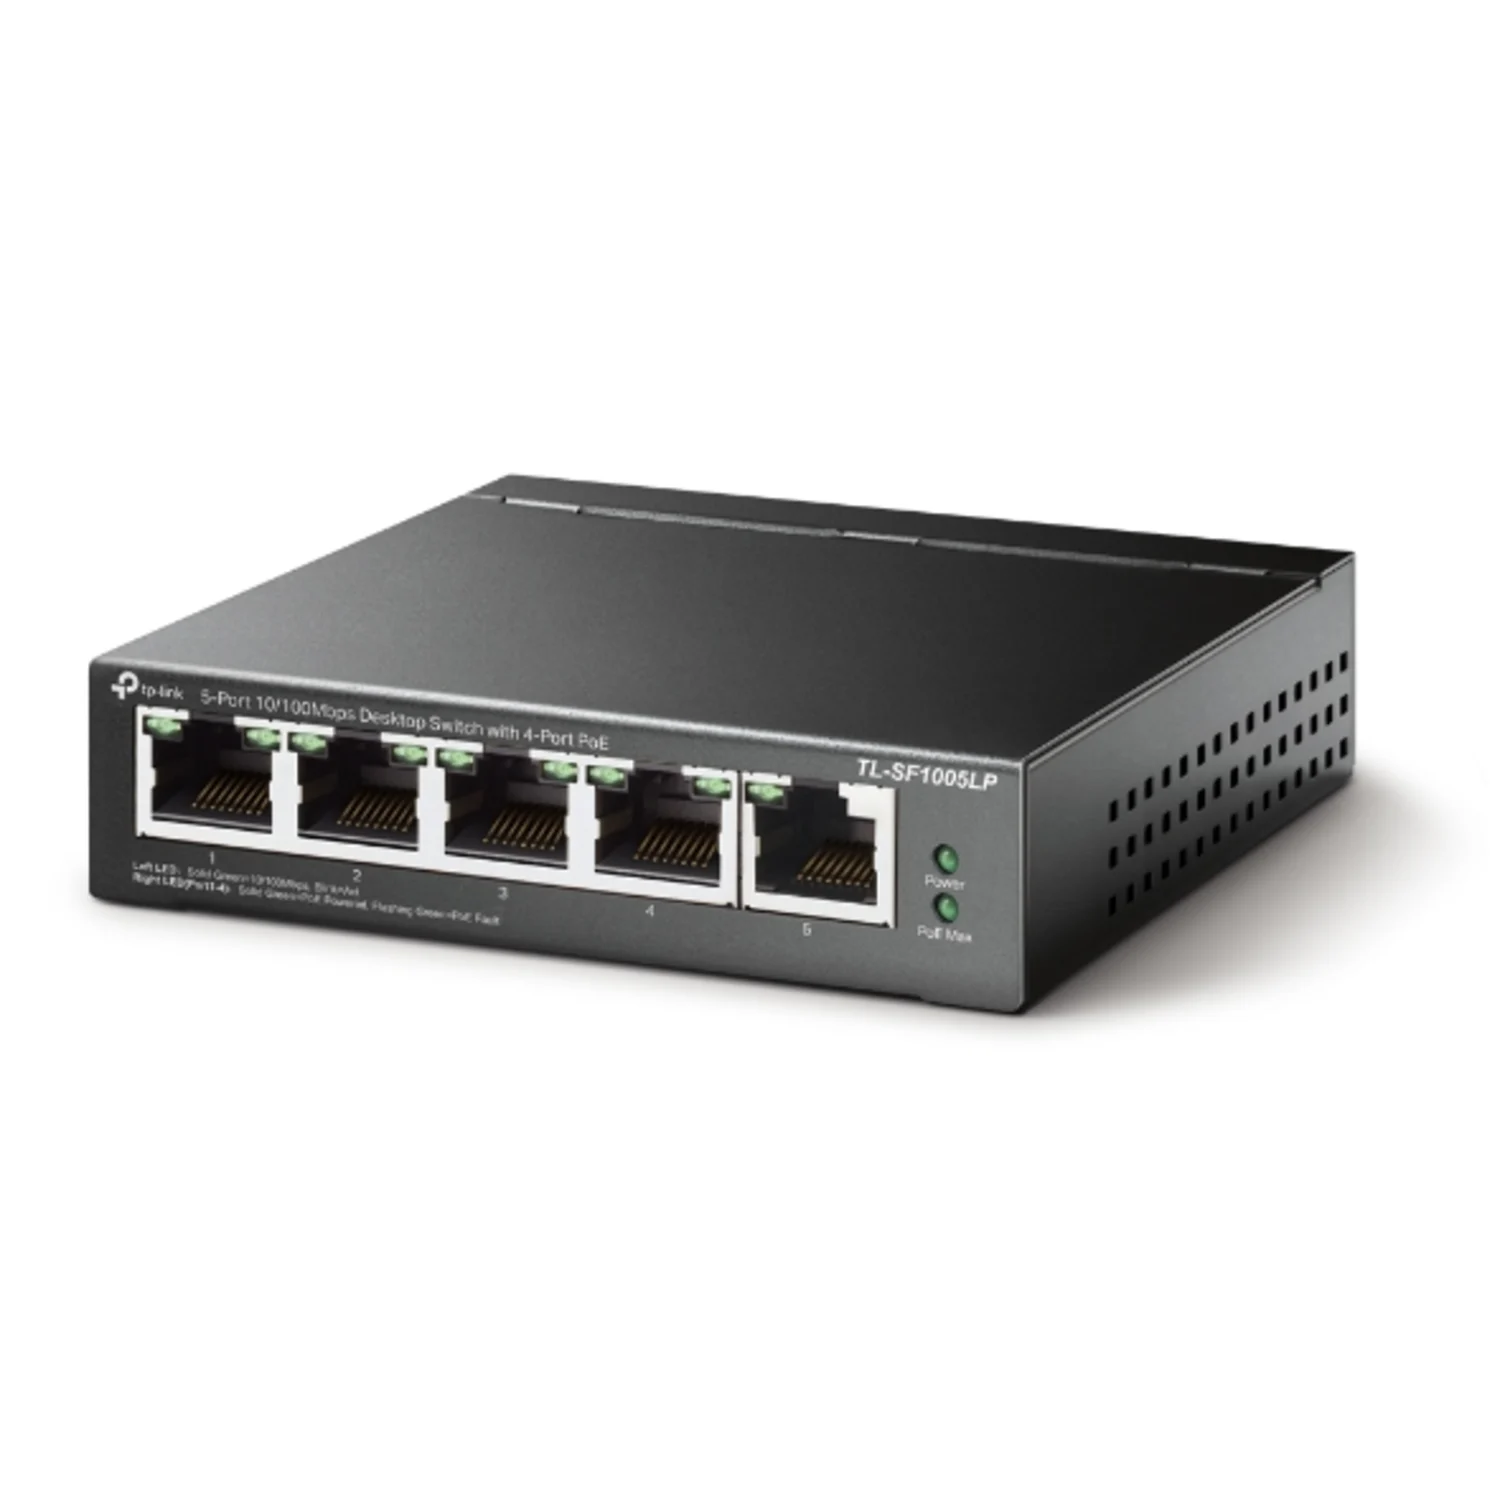 Hub Switch TP-link 5 portas / 10/100 / POE - Preto (TL-SF1005LP)